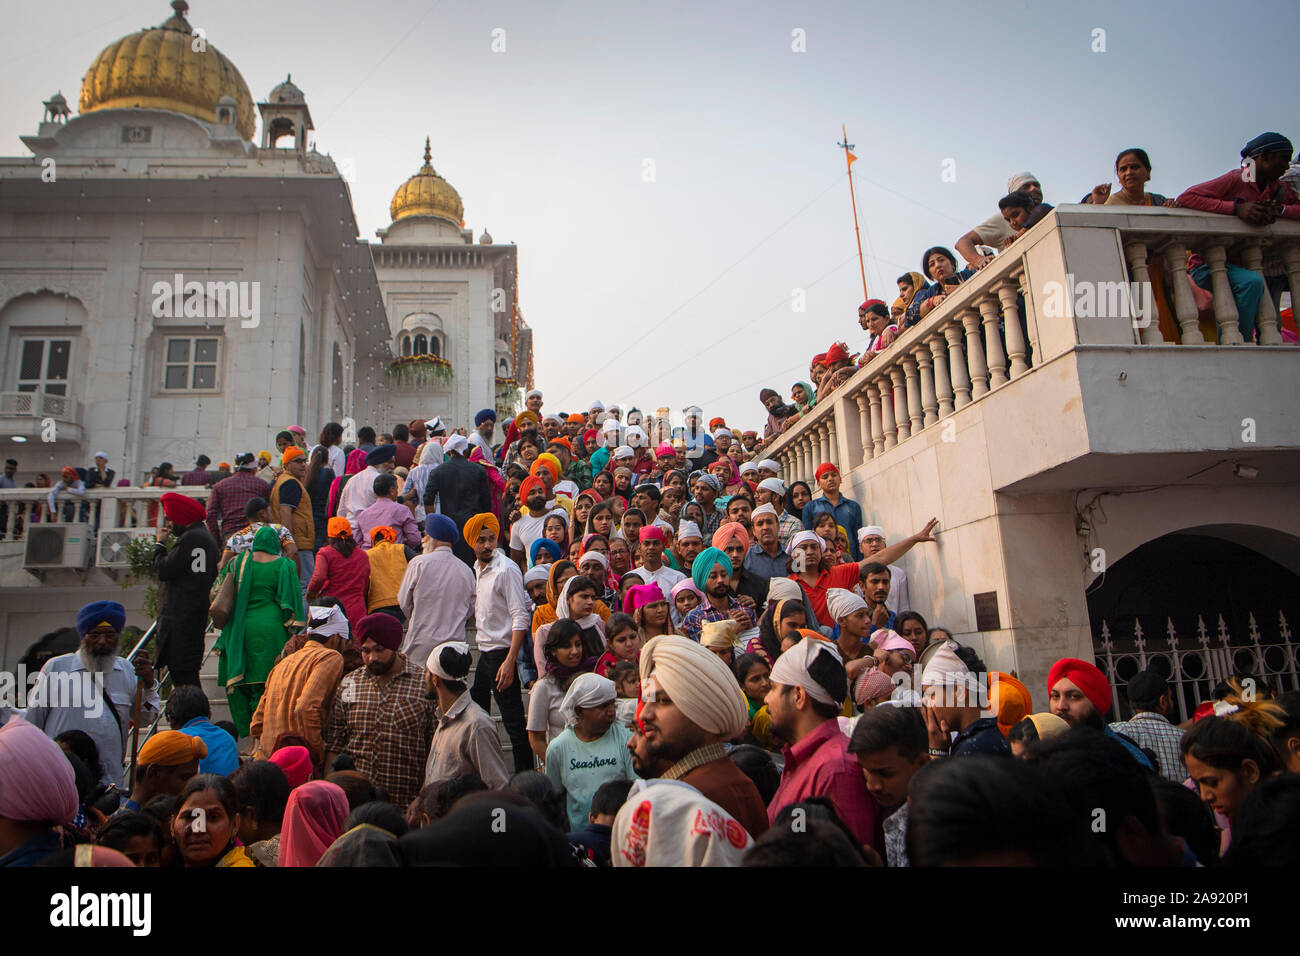 Les visiteurs du Temple Gurudwara Bangla Sahib à New Delhi, Inde, lorsque les gens commencent à célébrer le Gourou Nanak Jayanti Festival. Le Prince de Galles se rendra dans le pays cette semaine. Banque D'Images